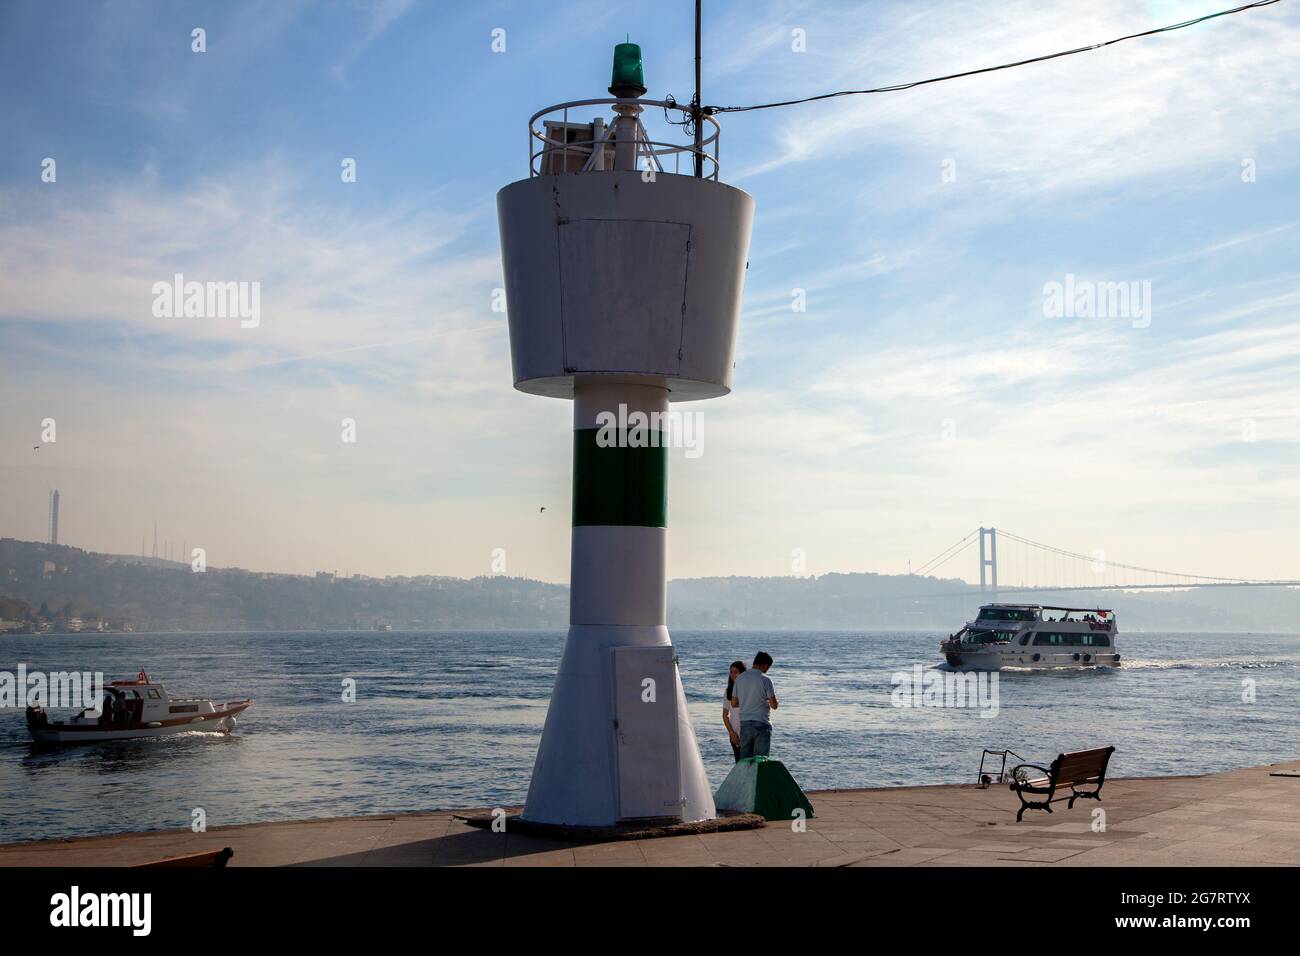 Besiktas,IstanbulTurkey - 10-23-2017:Akintiburnu lighthouse and Bosphorus view Stock Photo